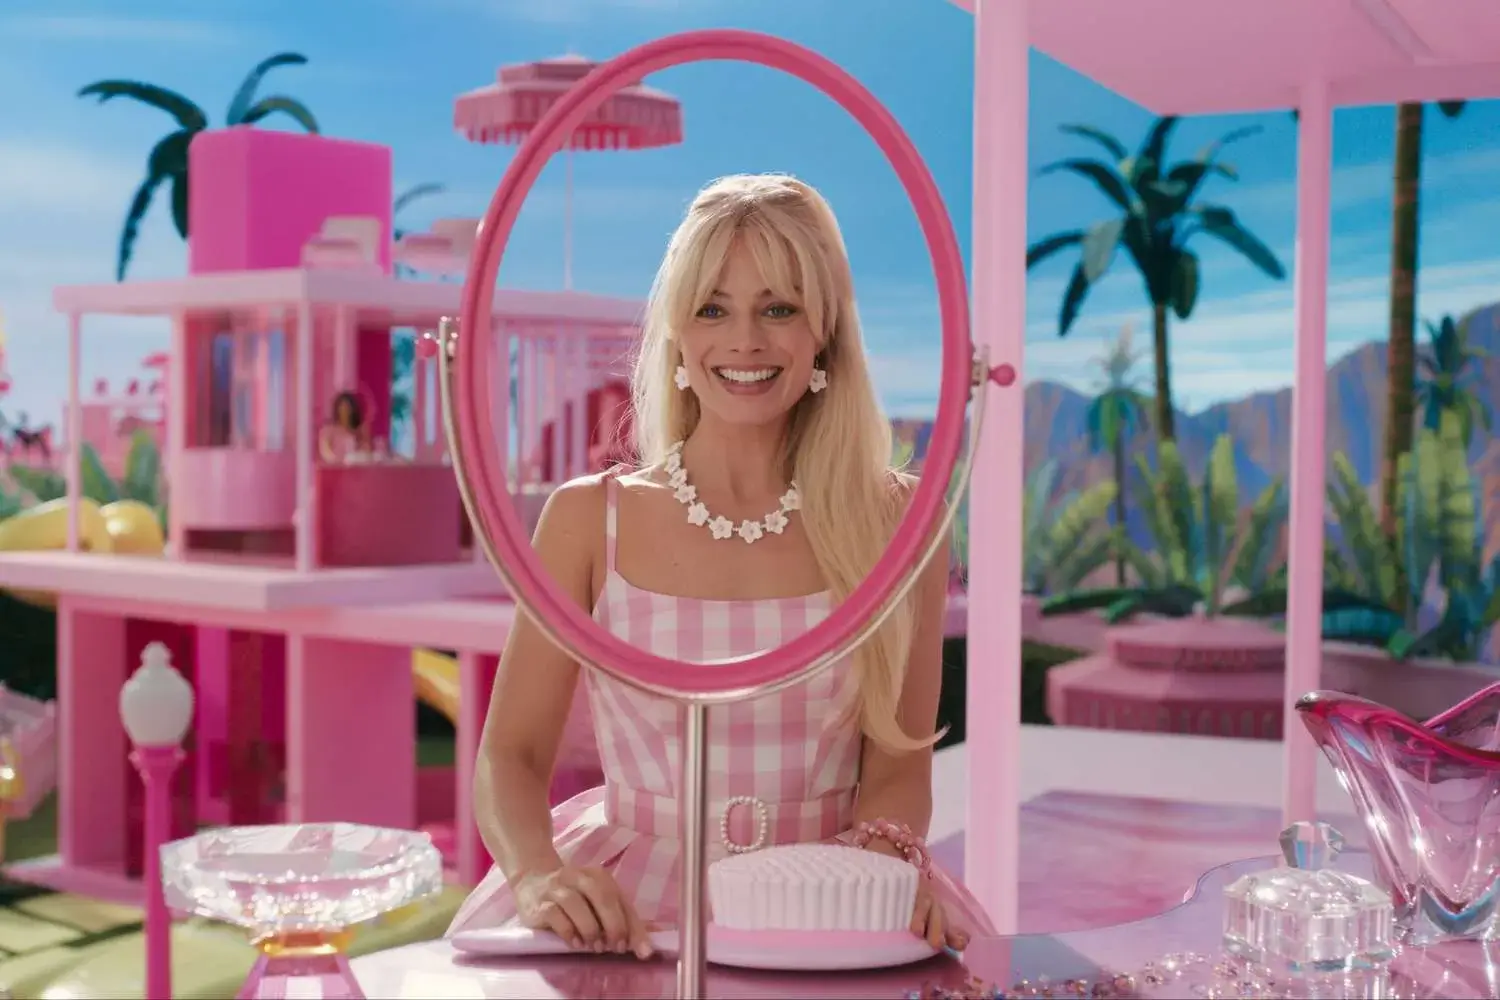 نقد فیلم Barbie: توخالی با روکش صورتی